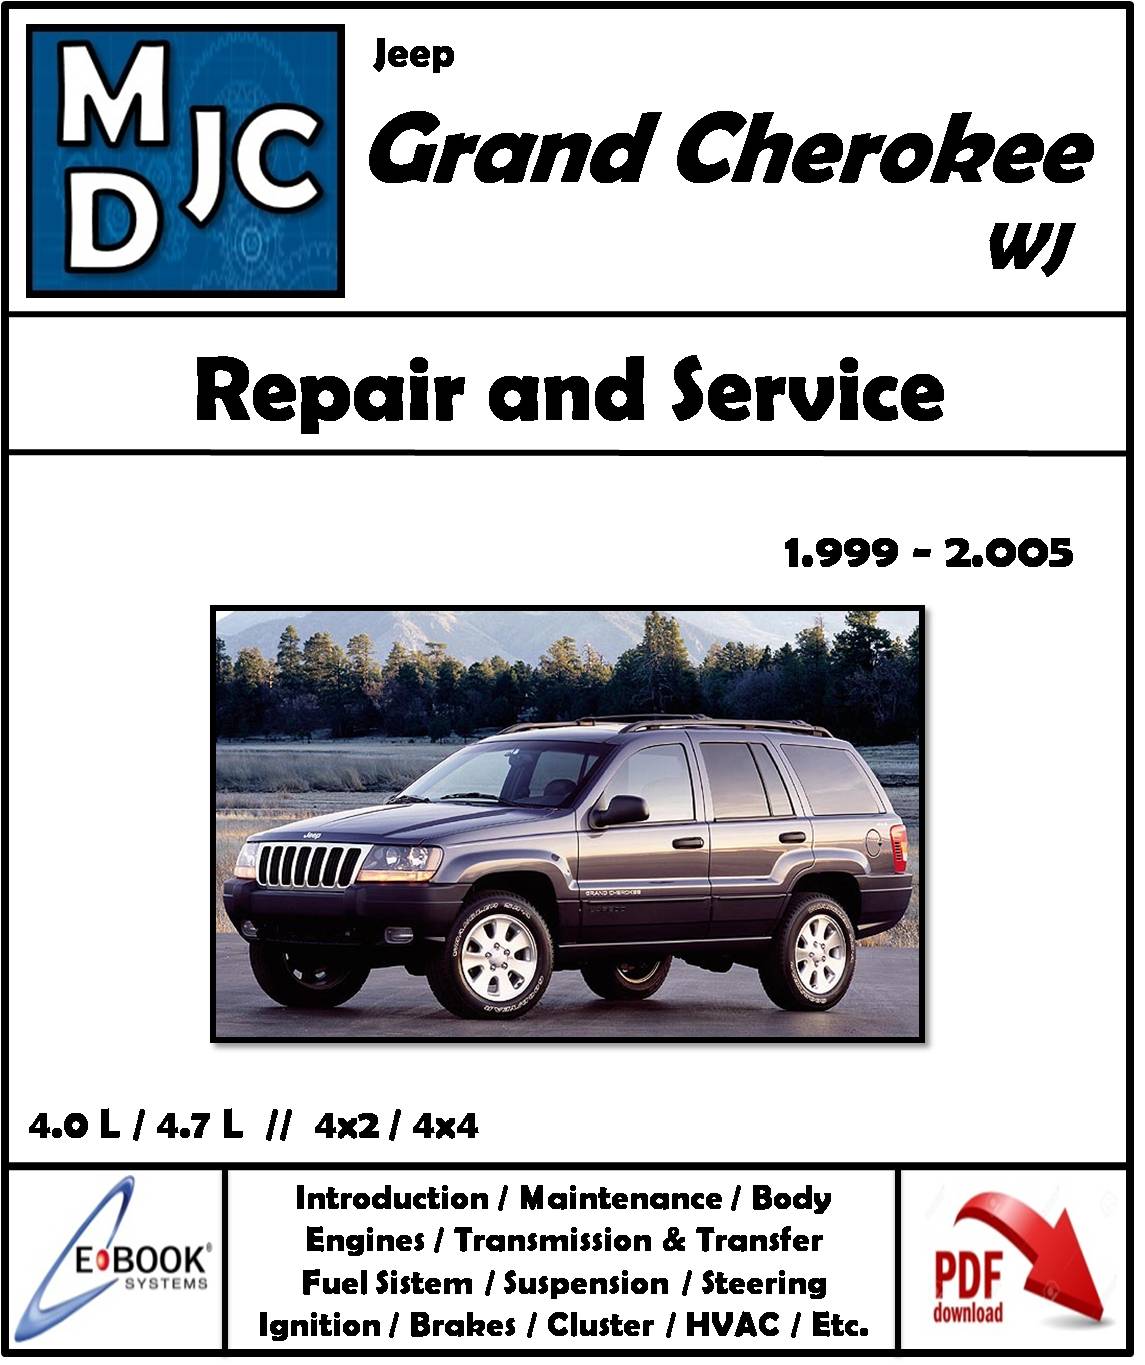 Manual de Taller (Reparación Mecánica) Jeep Grand Cherokee 1999 - 2005